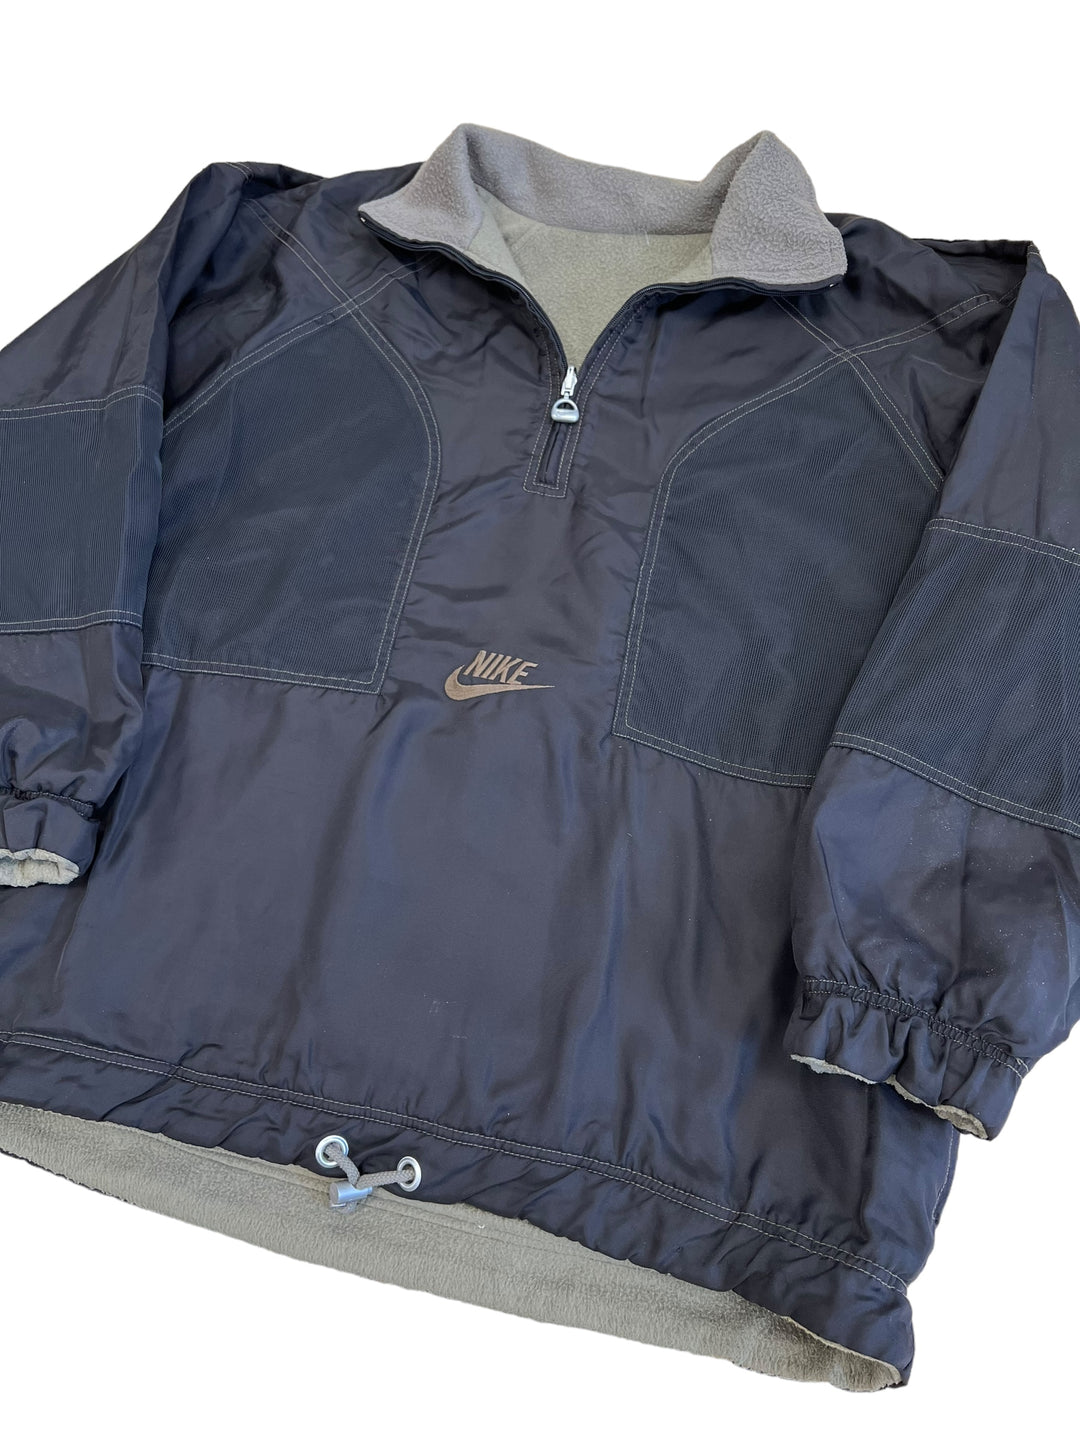 Nike 90’s Reversible fleece | windbreaker pullover jacket Men’s large